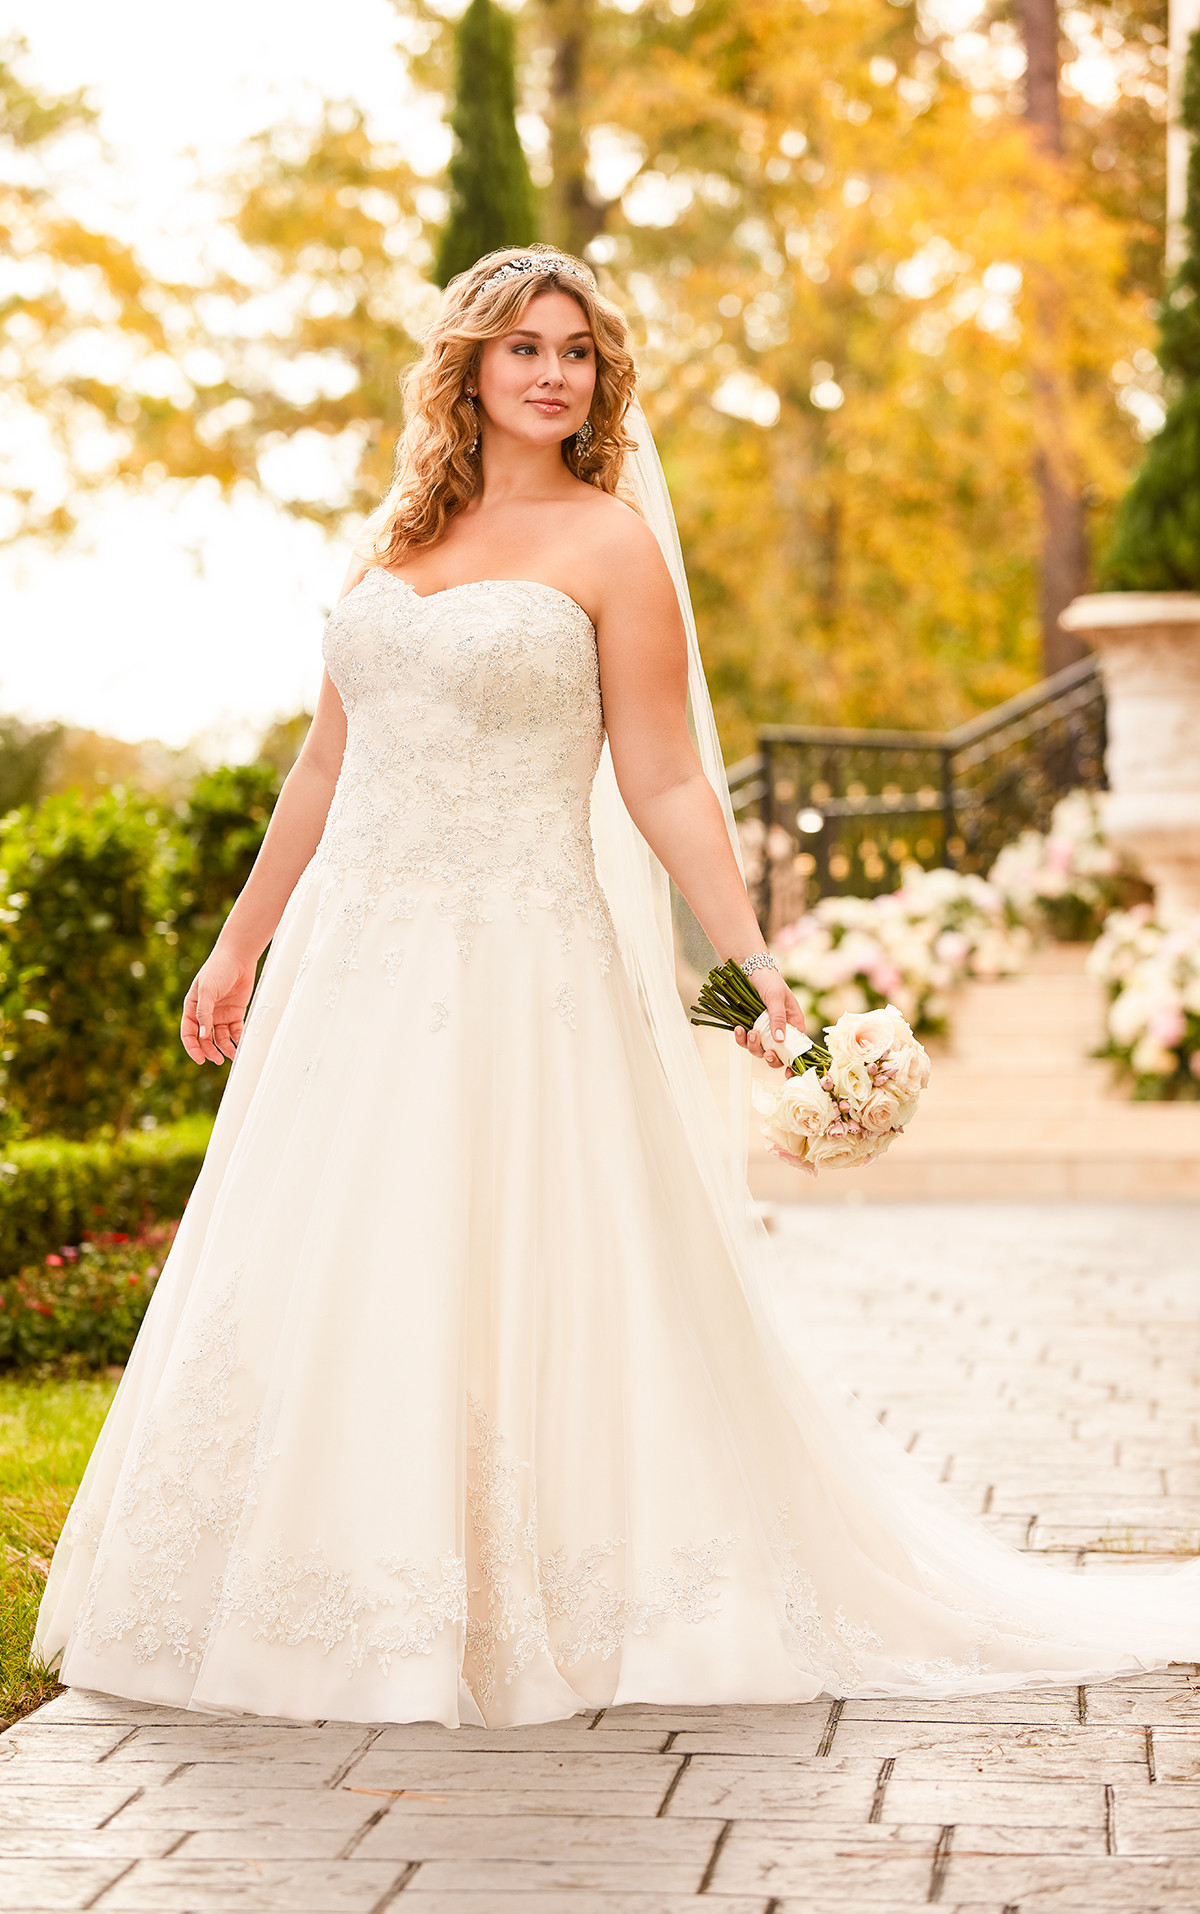 Wedding Dresses Images
 Wedding Dresses Lace Plus Size Bridal Gown